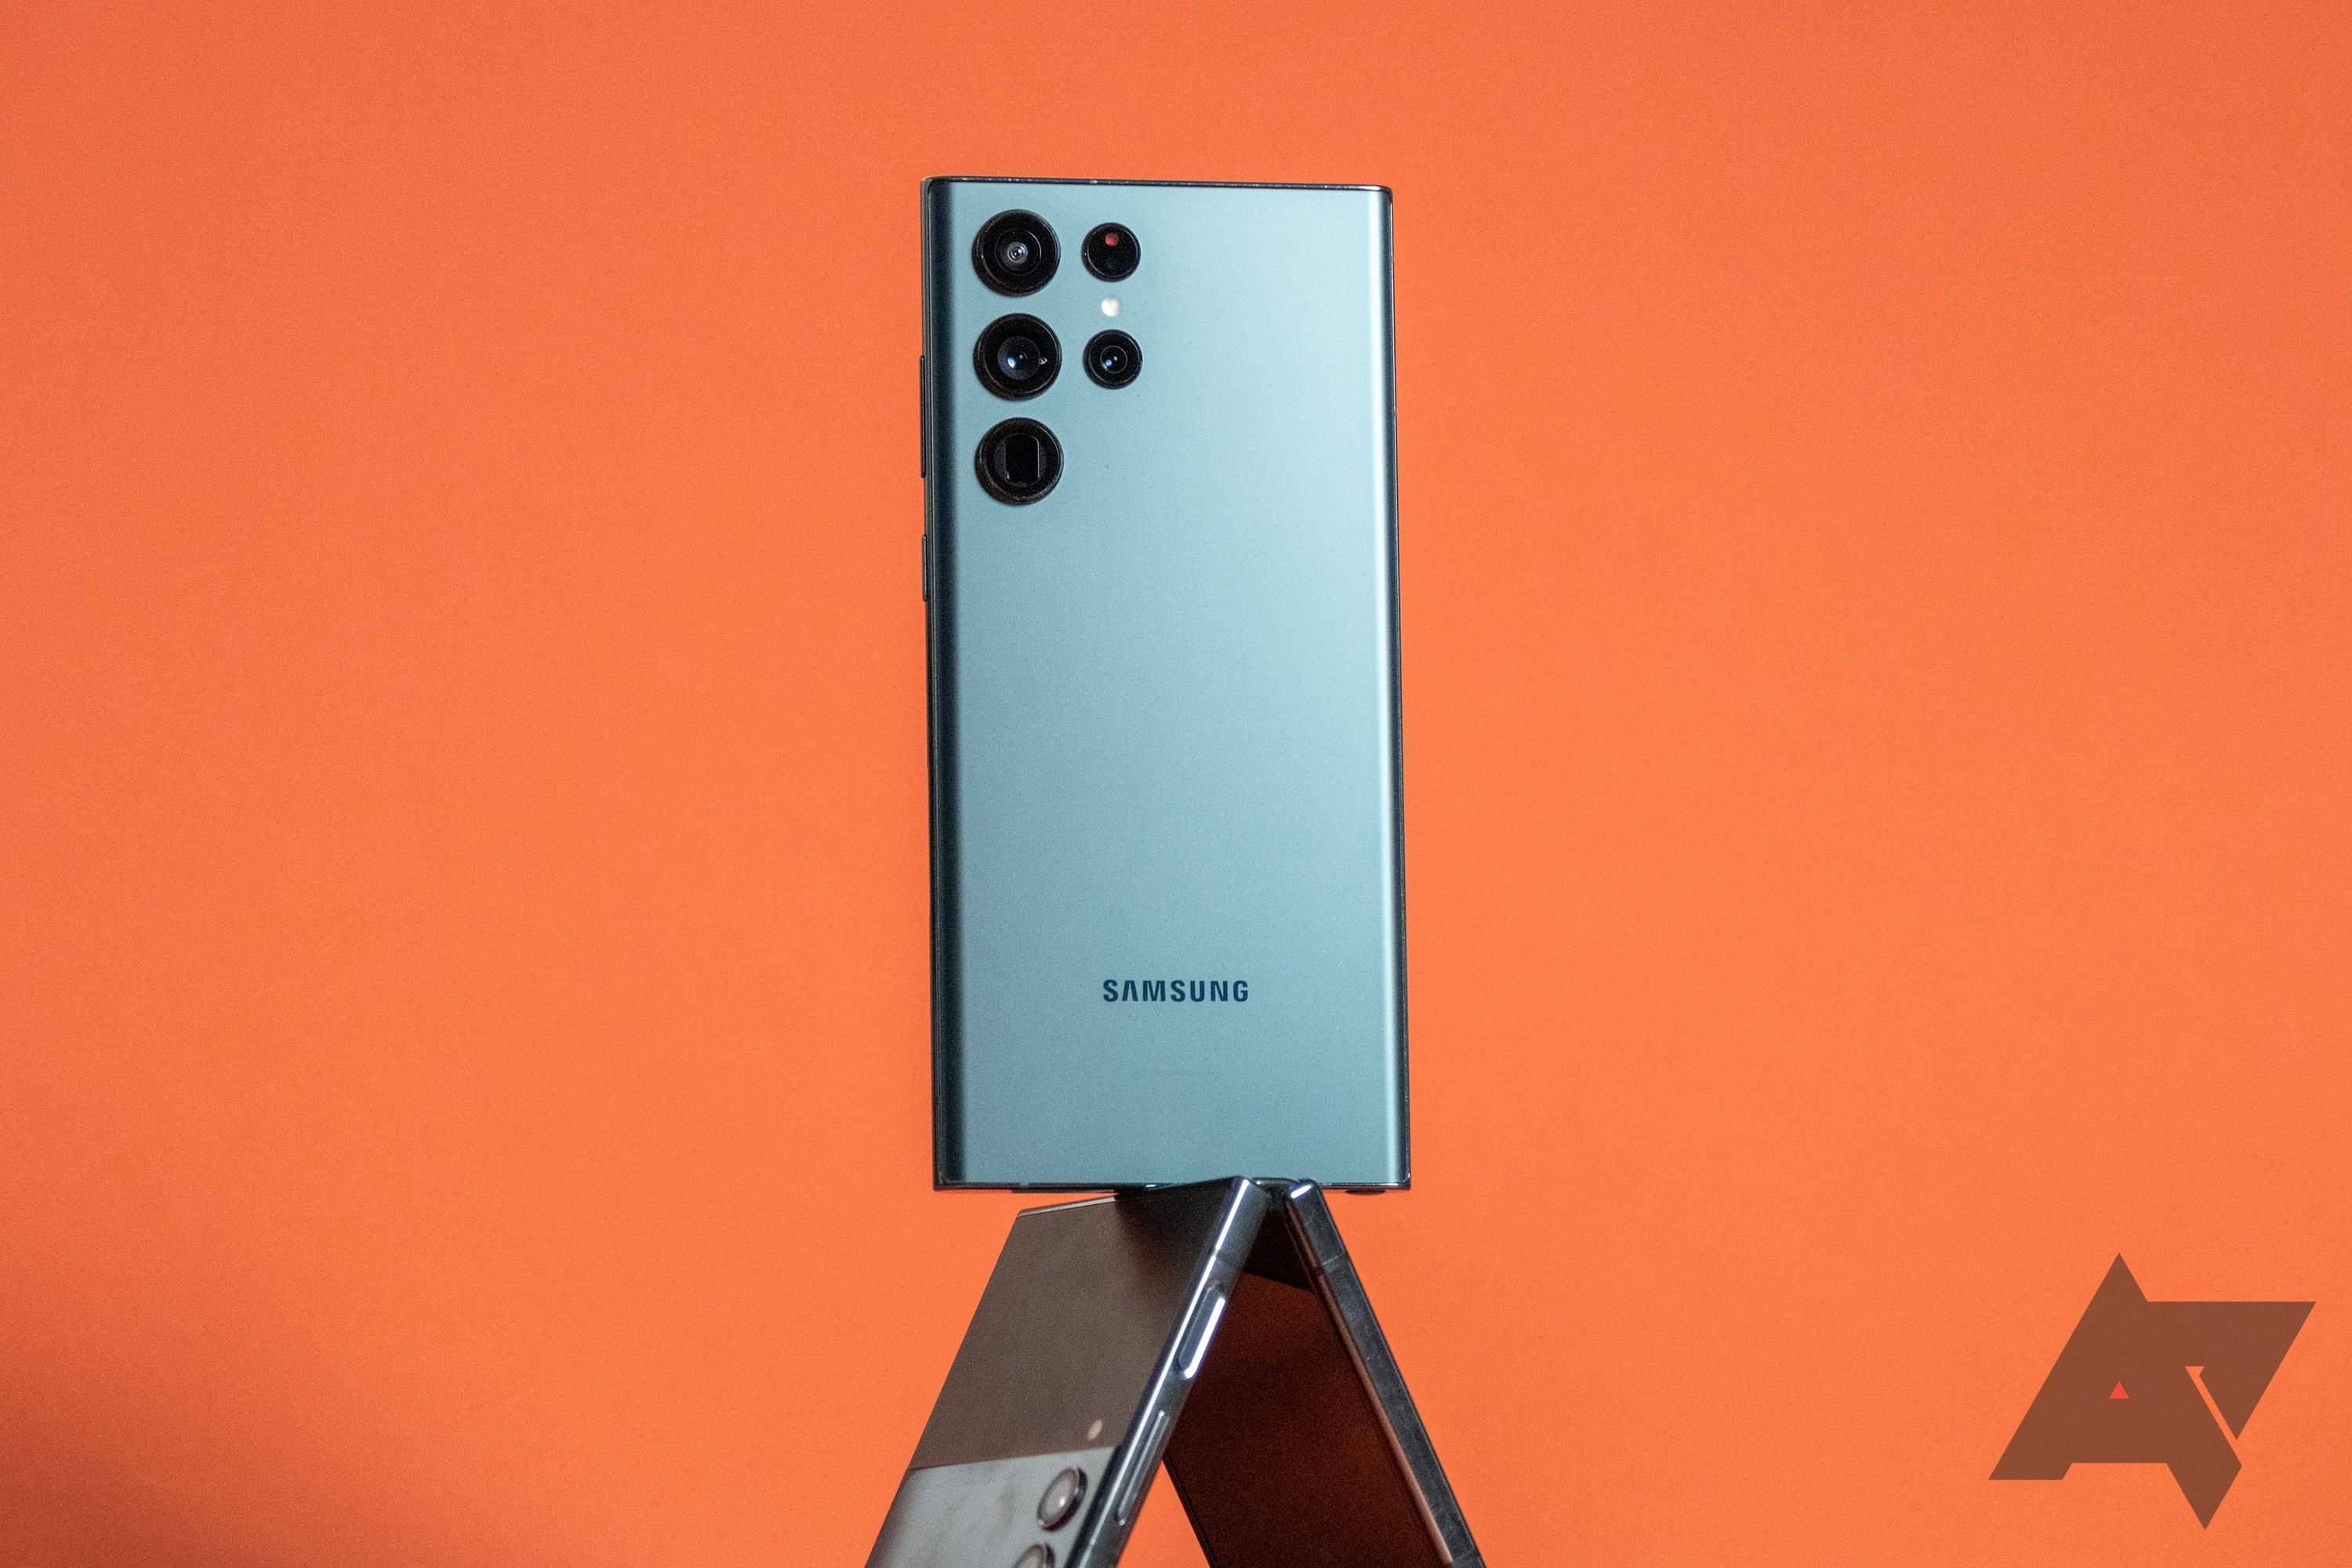 Samsung Galaxy S22 Ultra balanced on top of Samsung Galaxy Z Flip 4